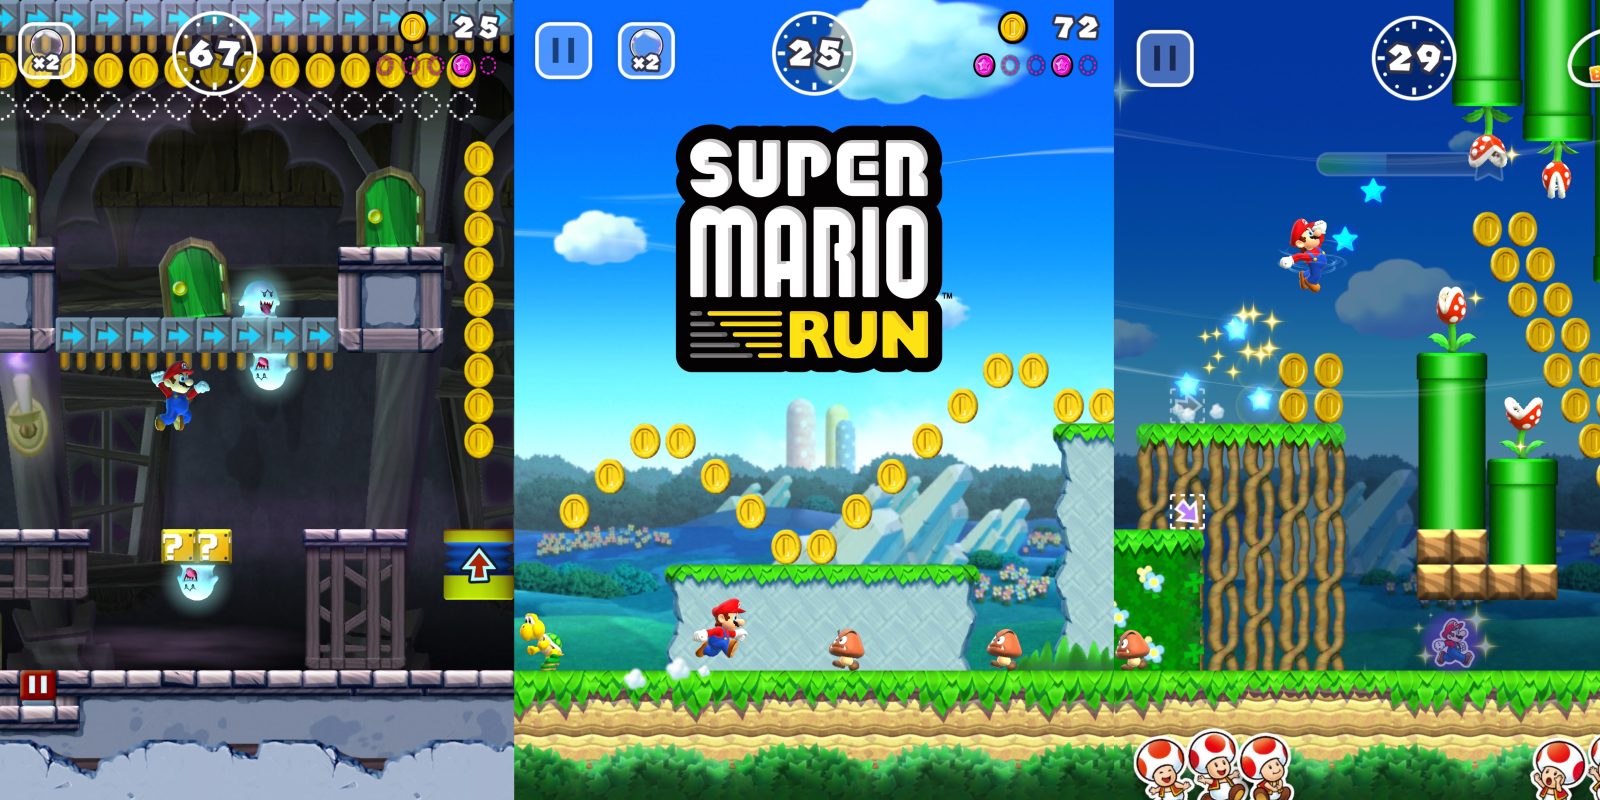 Super Mario Run chính thức có mặt trên App Store, mời các bạn tải về